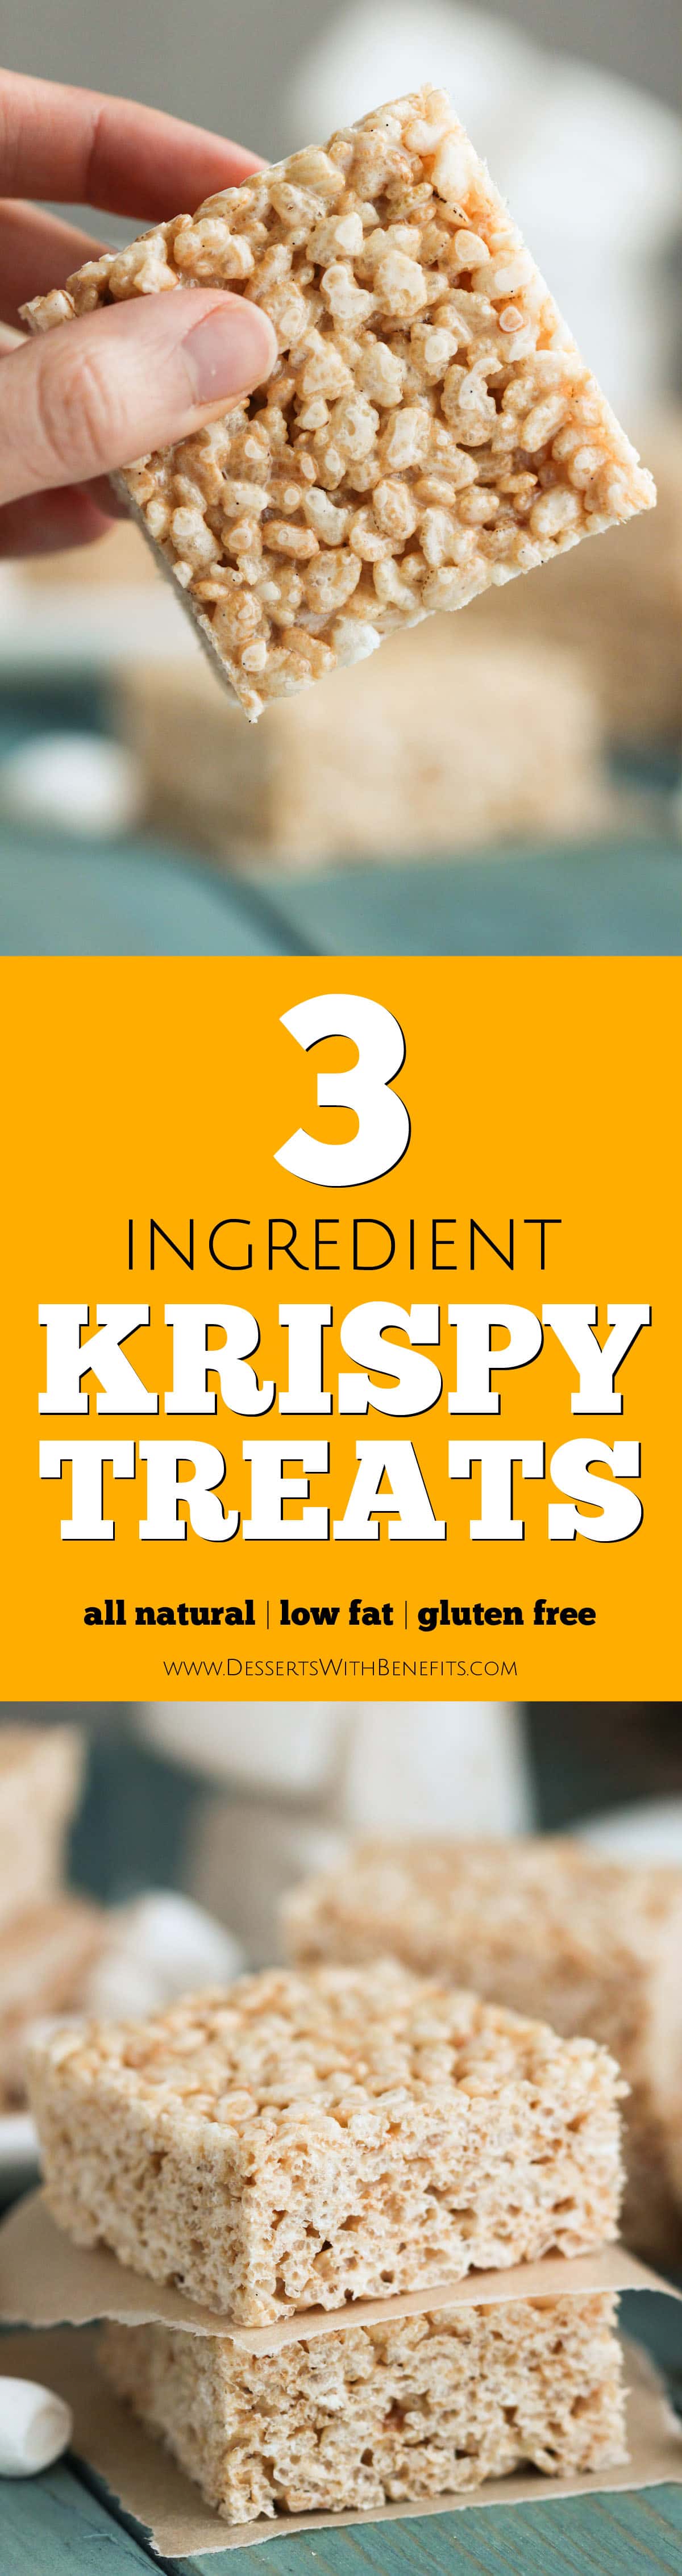 Healthy Back To School Recipe: Krispy Treats